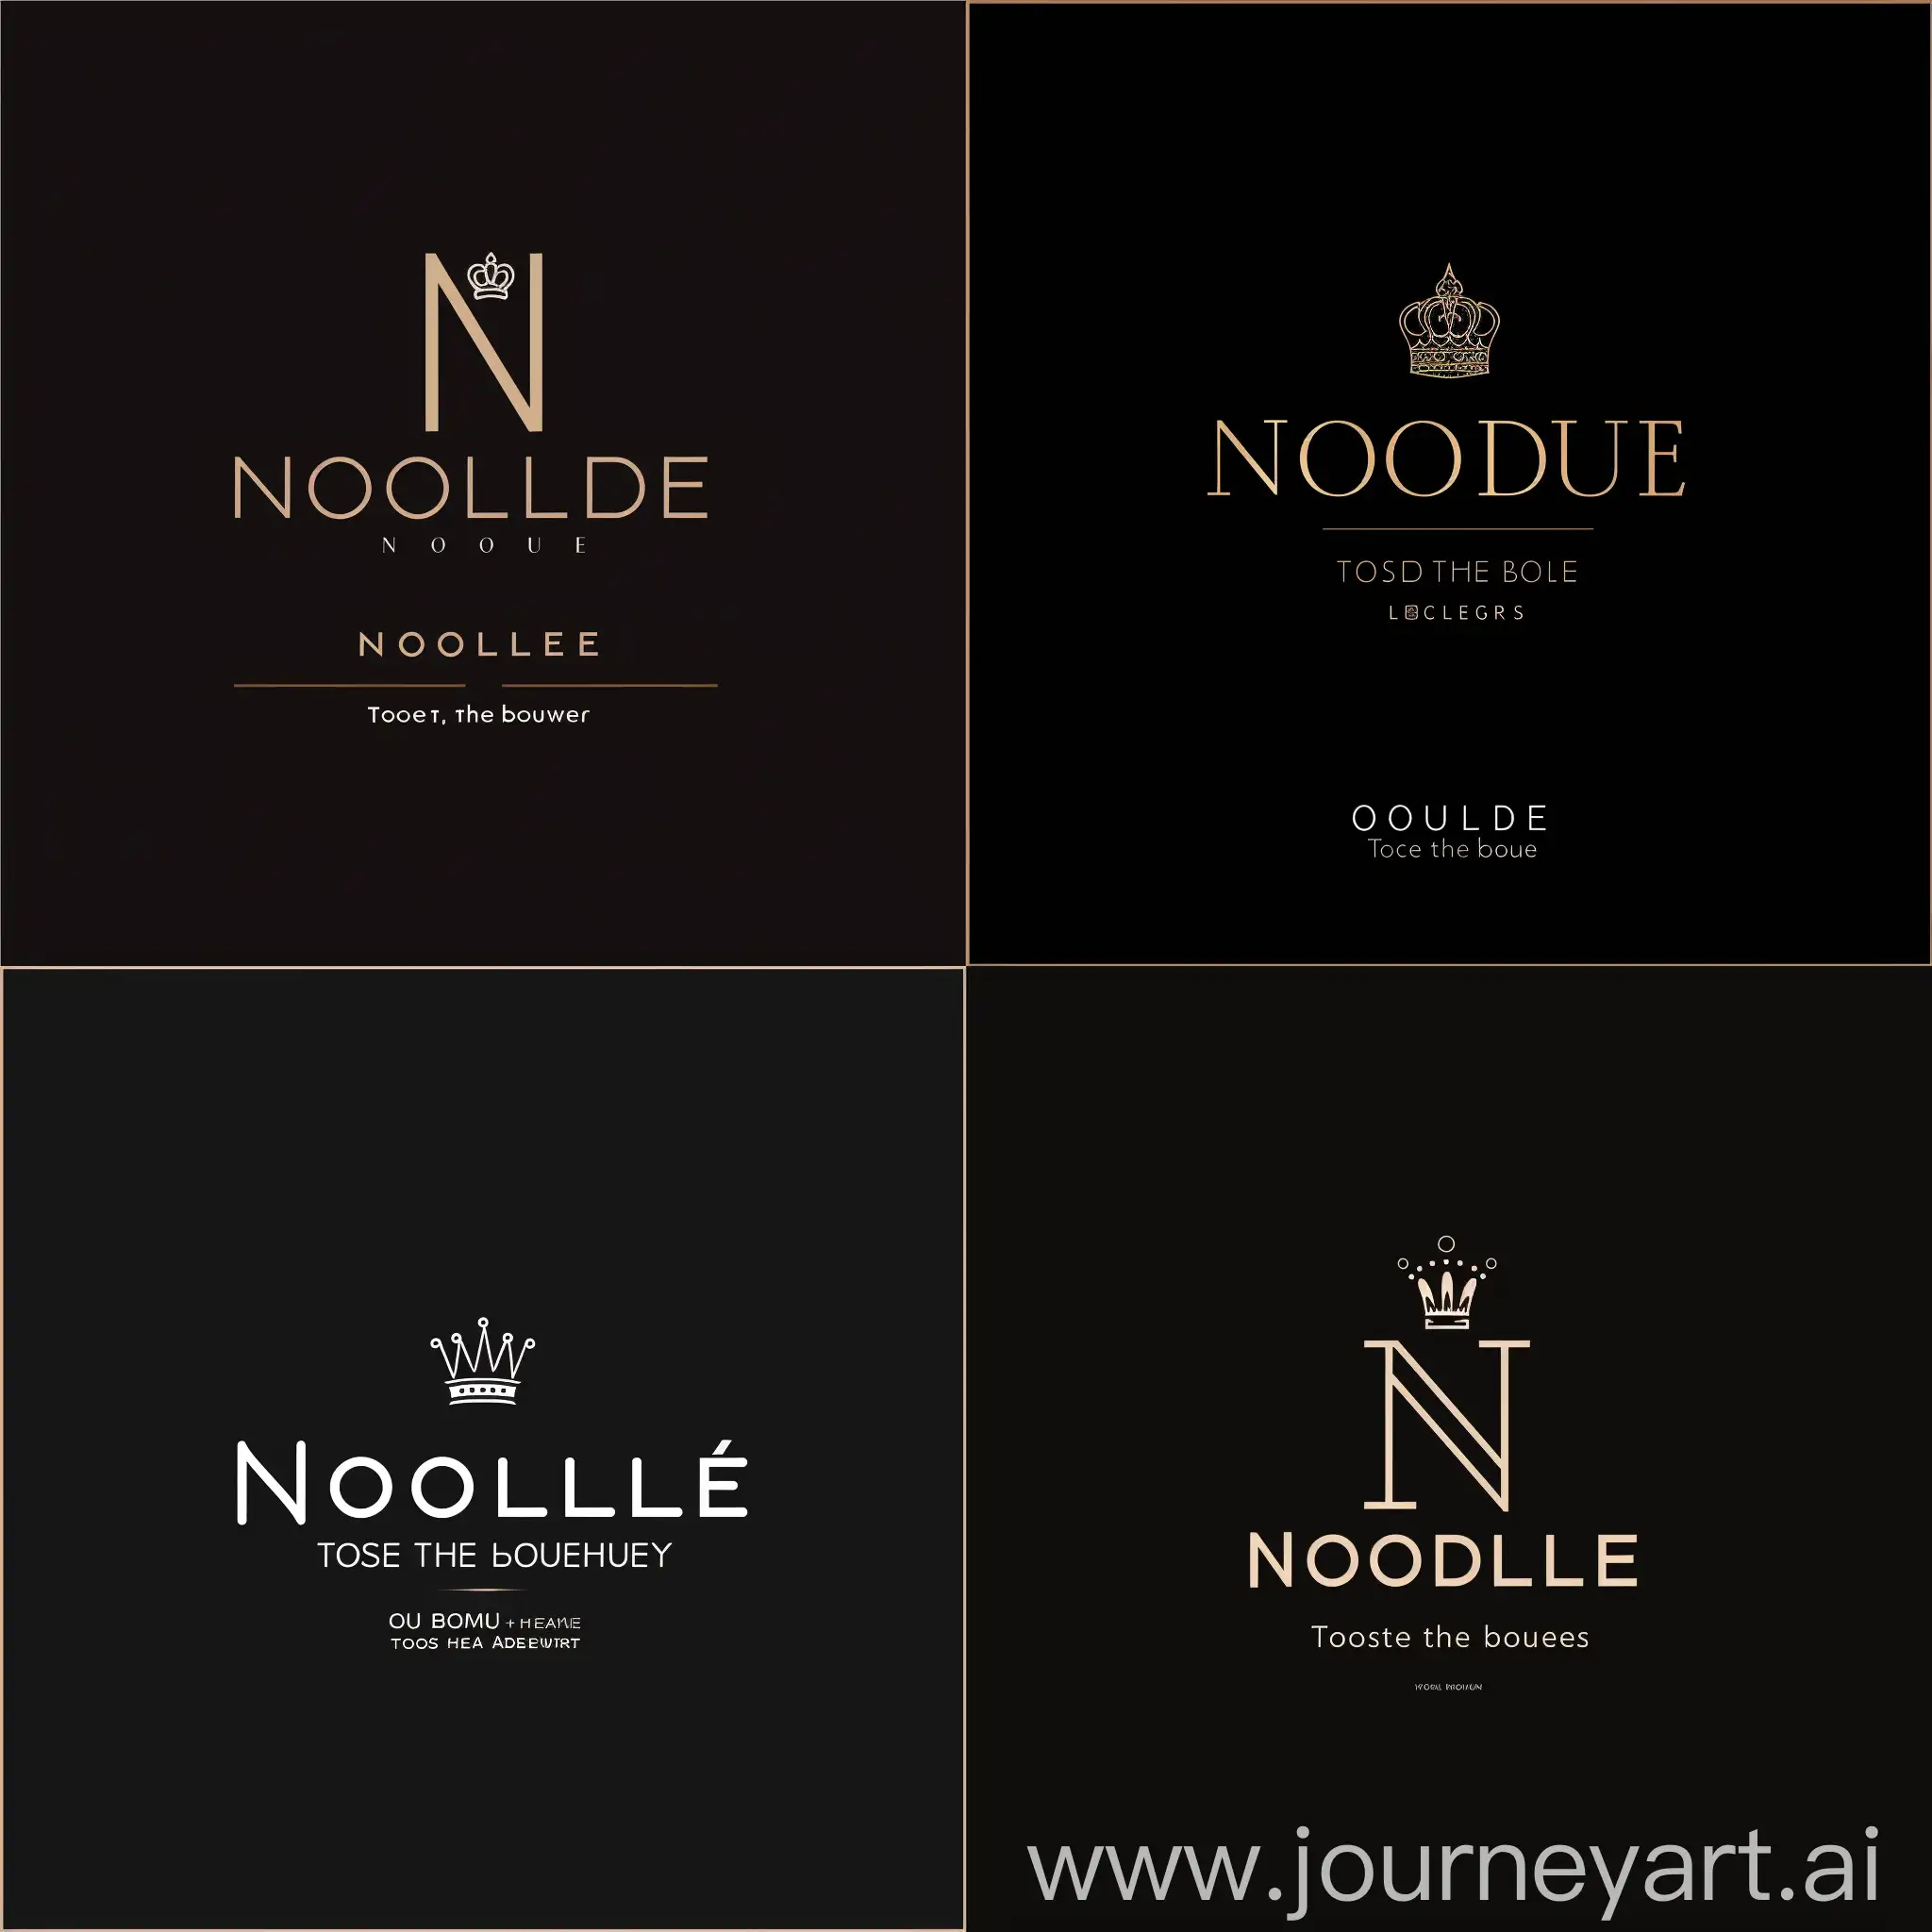 "Создайте логотип для бренда 'Noble' с использованием минималистичного дизайна. Напишите прямой шрифт для слова 'Noble', используя простые линии и формы. Интегрируйте символ короны в букву 'N', чтобы придать логотипу уникальность и запоминаемость. Разместите слоган 'Прикоснись к прекрасному' под логотипом, чтобы добавить гармонии и завершенности композиции